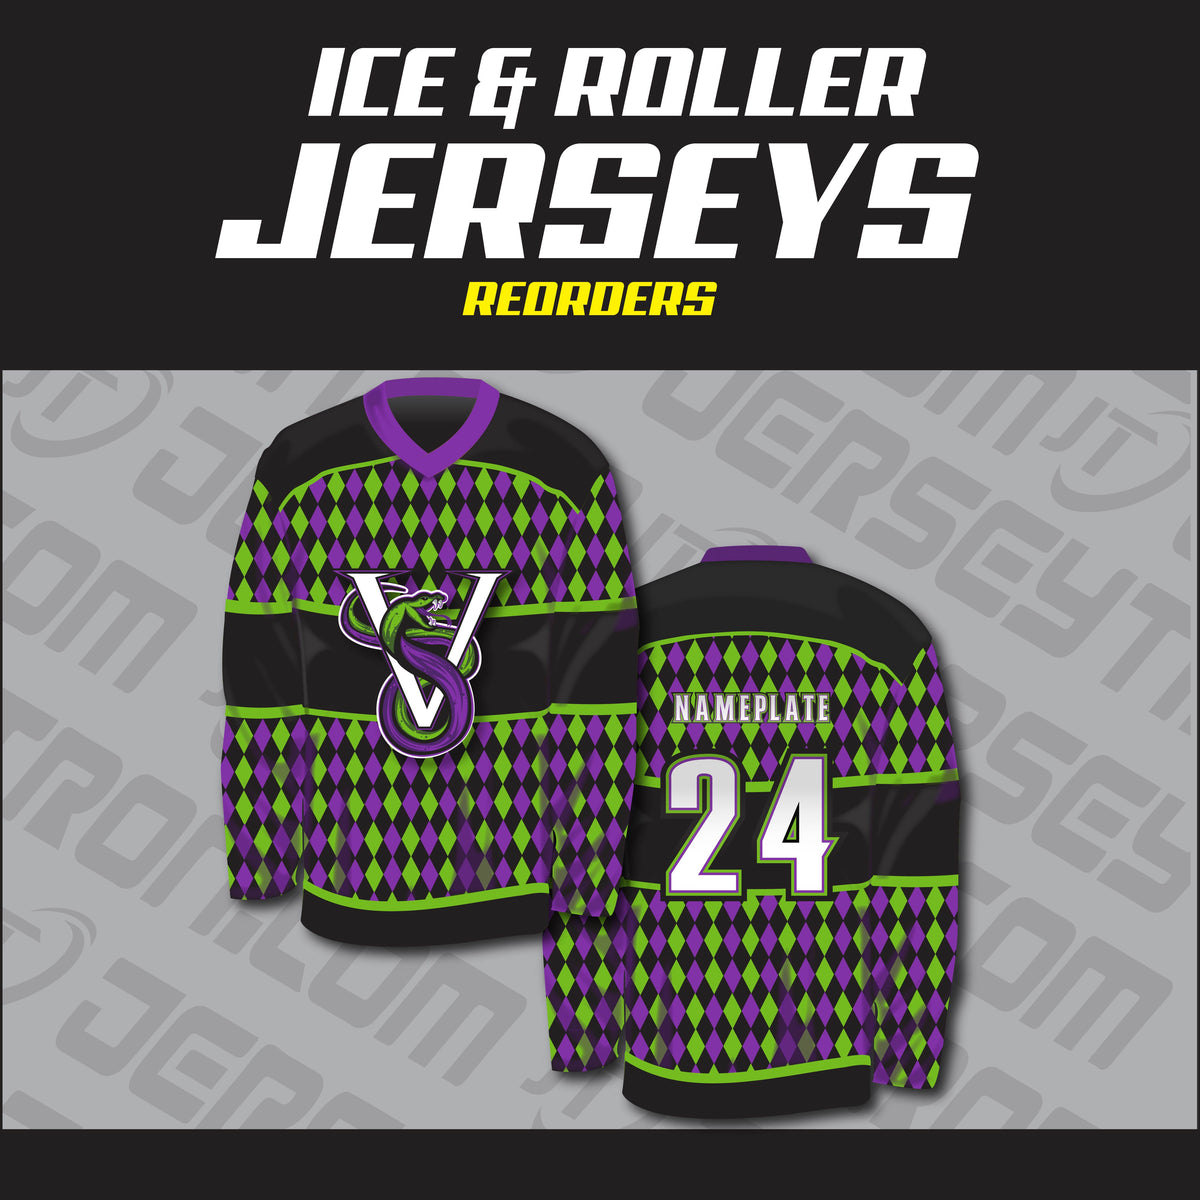 unique cool hockey jersey designs